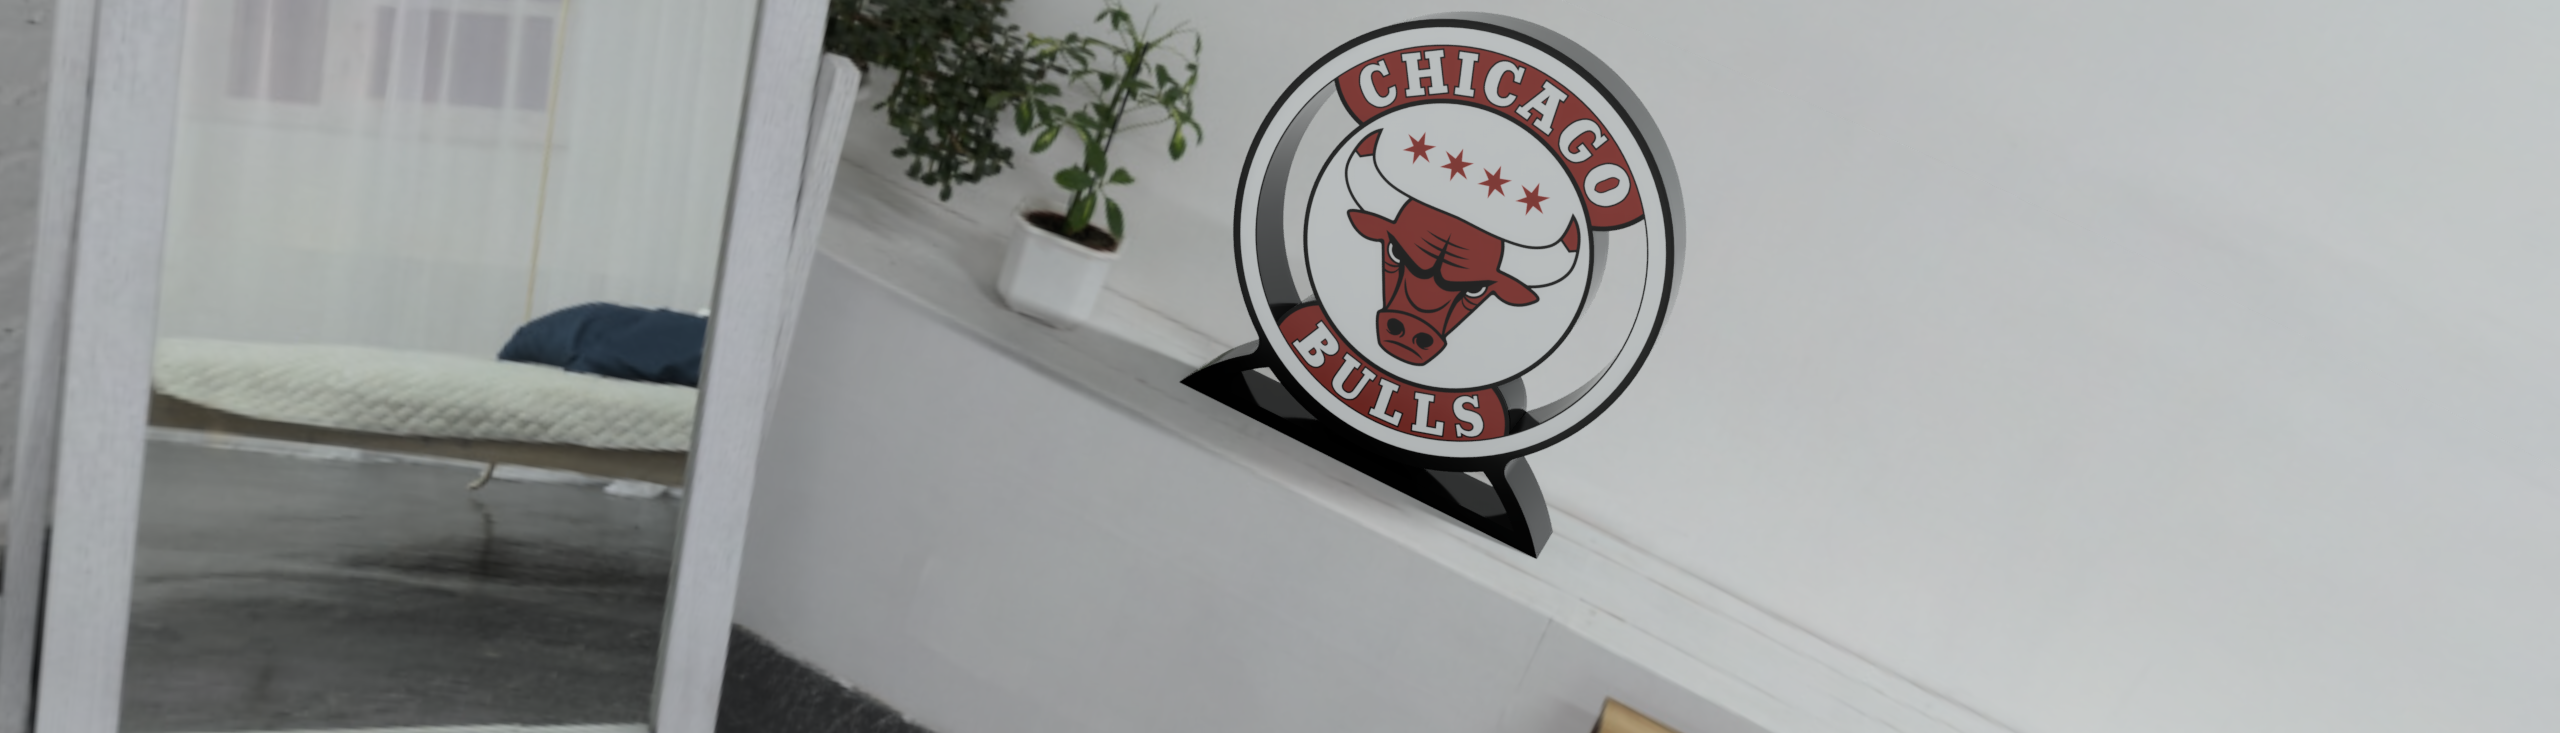 Lámpara led inspirada en el equipo de la NBA (CHICAGO BULLS)